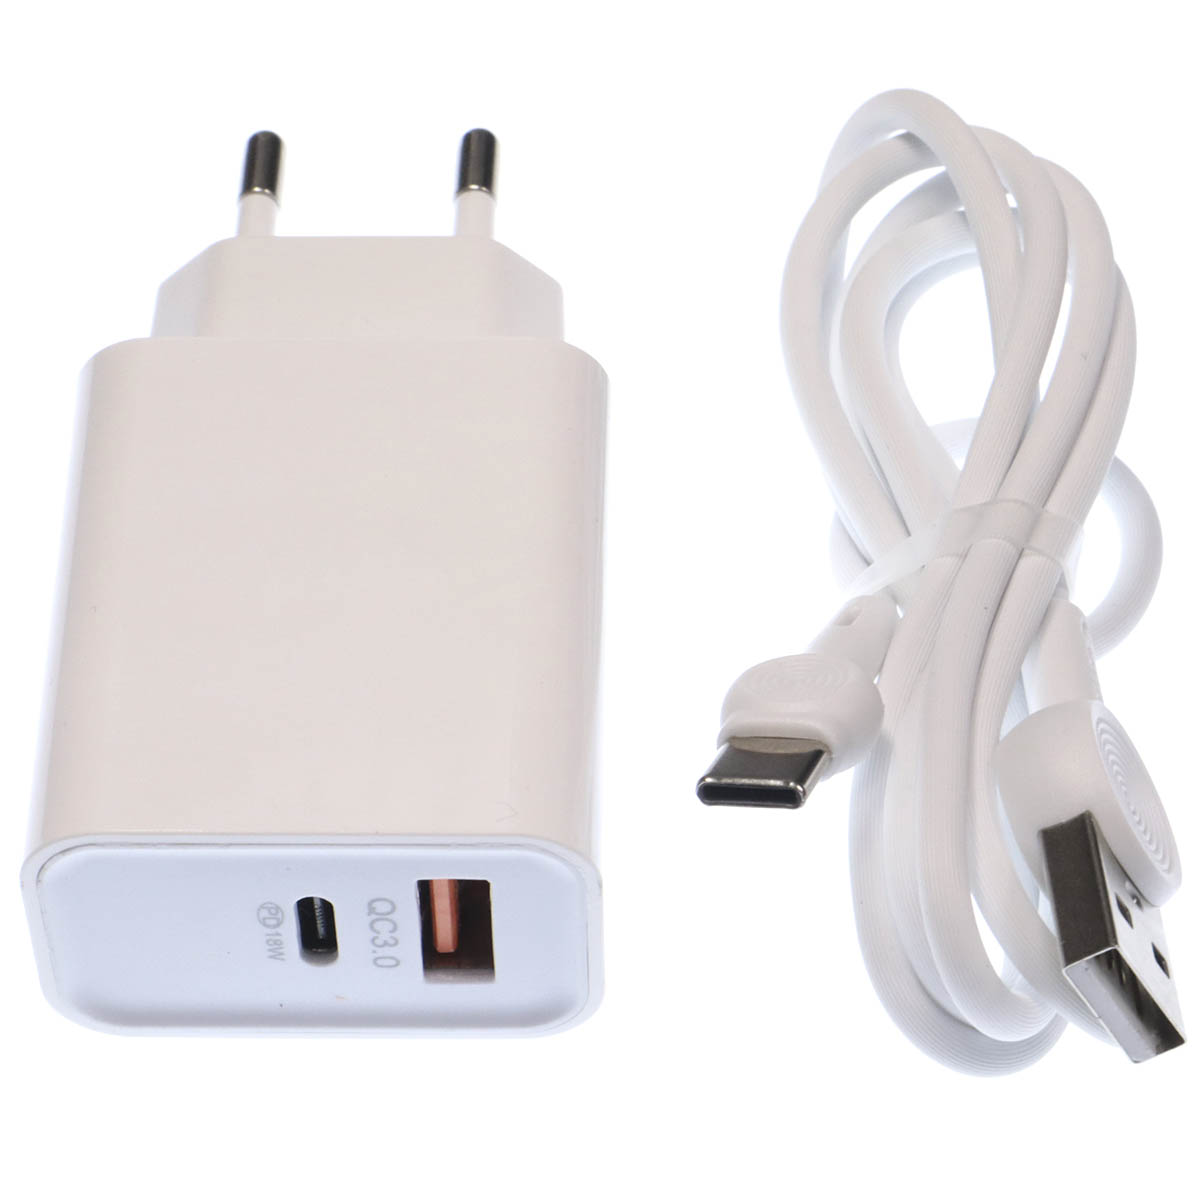 СЗУ (Сетевое зарядное устройство) EARLDOM ES-KC25C с кабелем USB Type C, 18W, 1 USB Type C, 1 USB, длина 1 метр, цвет белый